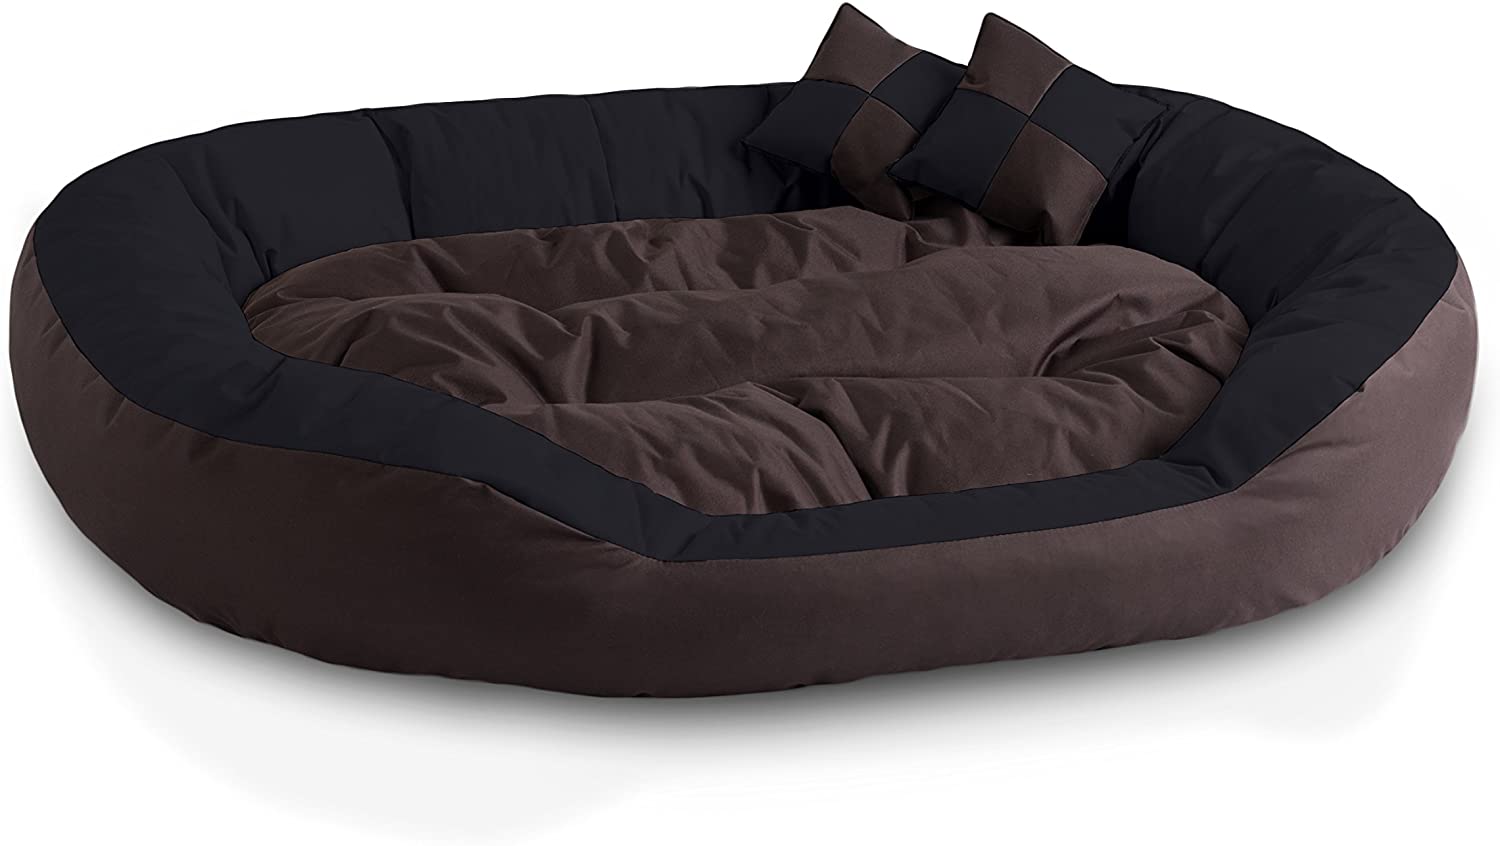  BedDog® 4en1 Saba Marron/Negro XXL Aprox. 110x80cm colchón para Perro, 7 Colores, Cama, sofá, Cesta para Perro 